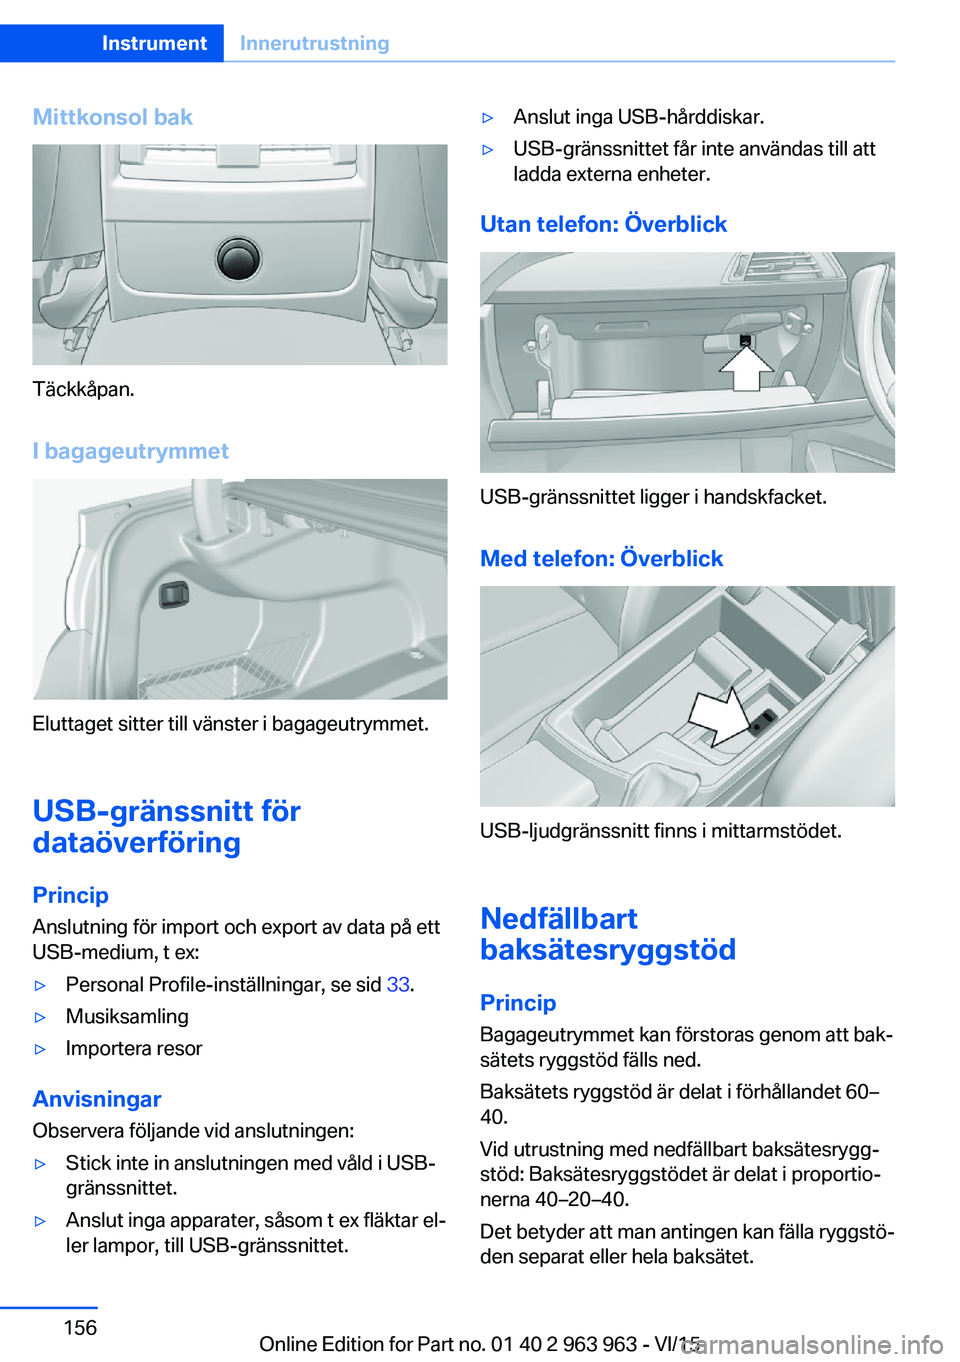 BMW 4 SERIES COUPE 2016  InstruktionsbÖcker (in Swedish) Mittkonsol bak
Täckkåpan.I bagageutrymmet
Eluttaget sitter till vänster i bagageutrymmet.
USB-gränssnitt för
dataöverföring
Princip Anslutning för import och export av data på ett
USB-medium,